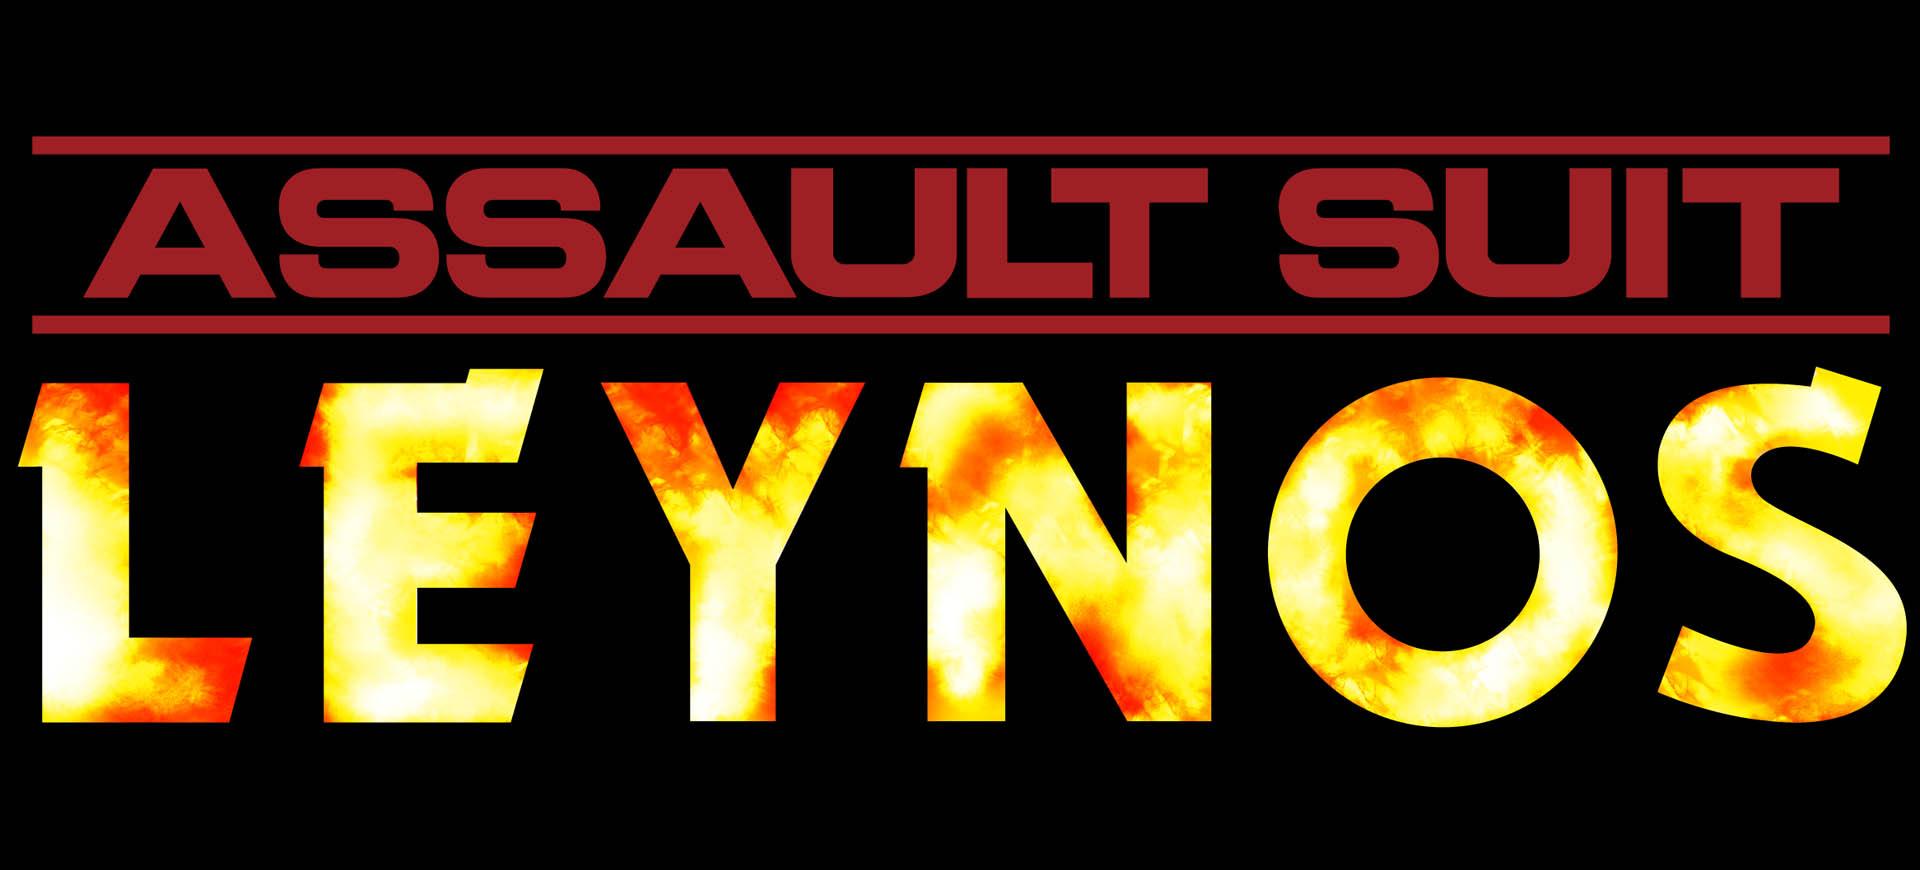 Assault Suit Leynos được đem trở lại trên PC và PS4